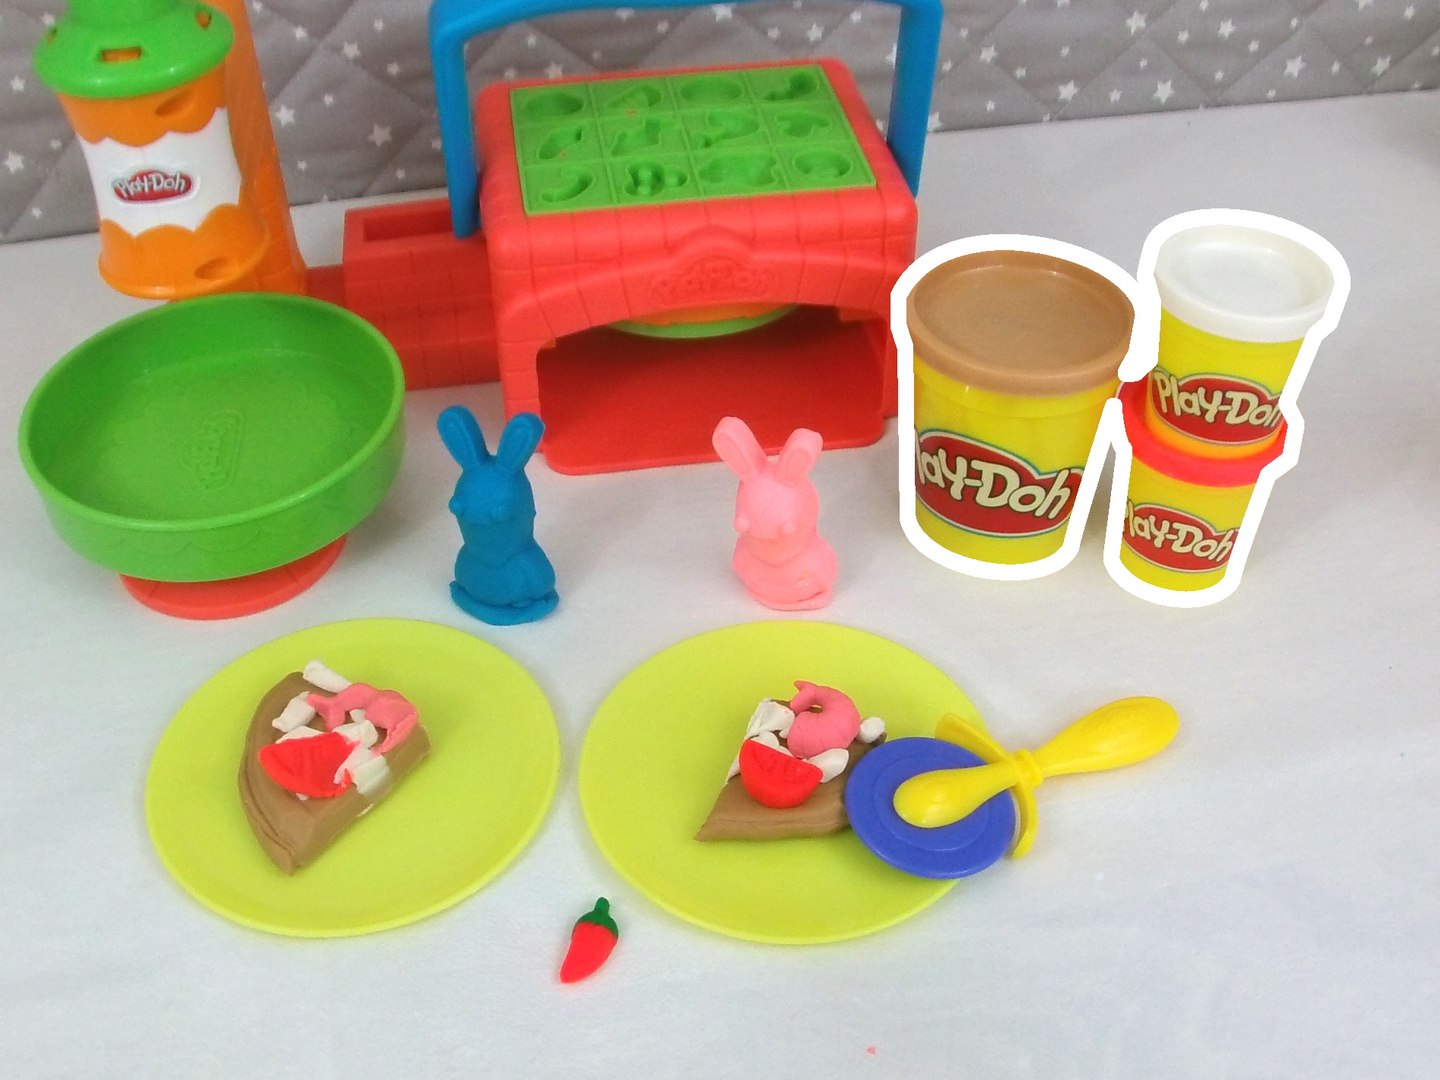 Jeu Pâte à Modeler Play-Doh Le Cuisine pour Le Pizza Jouet pour Enfants